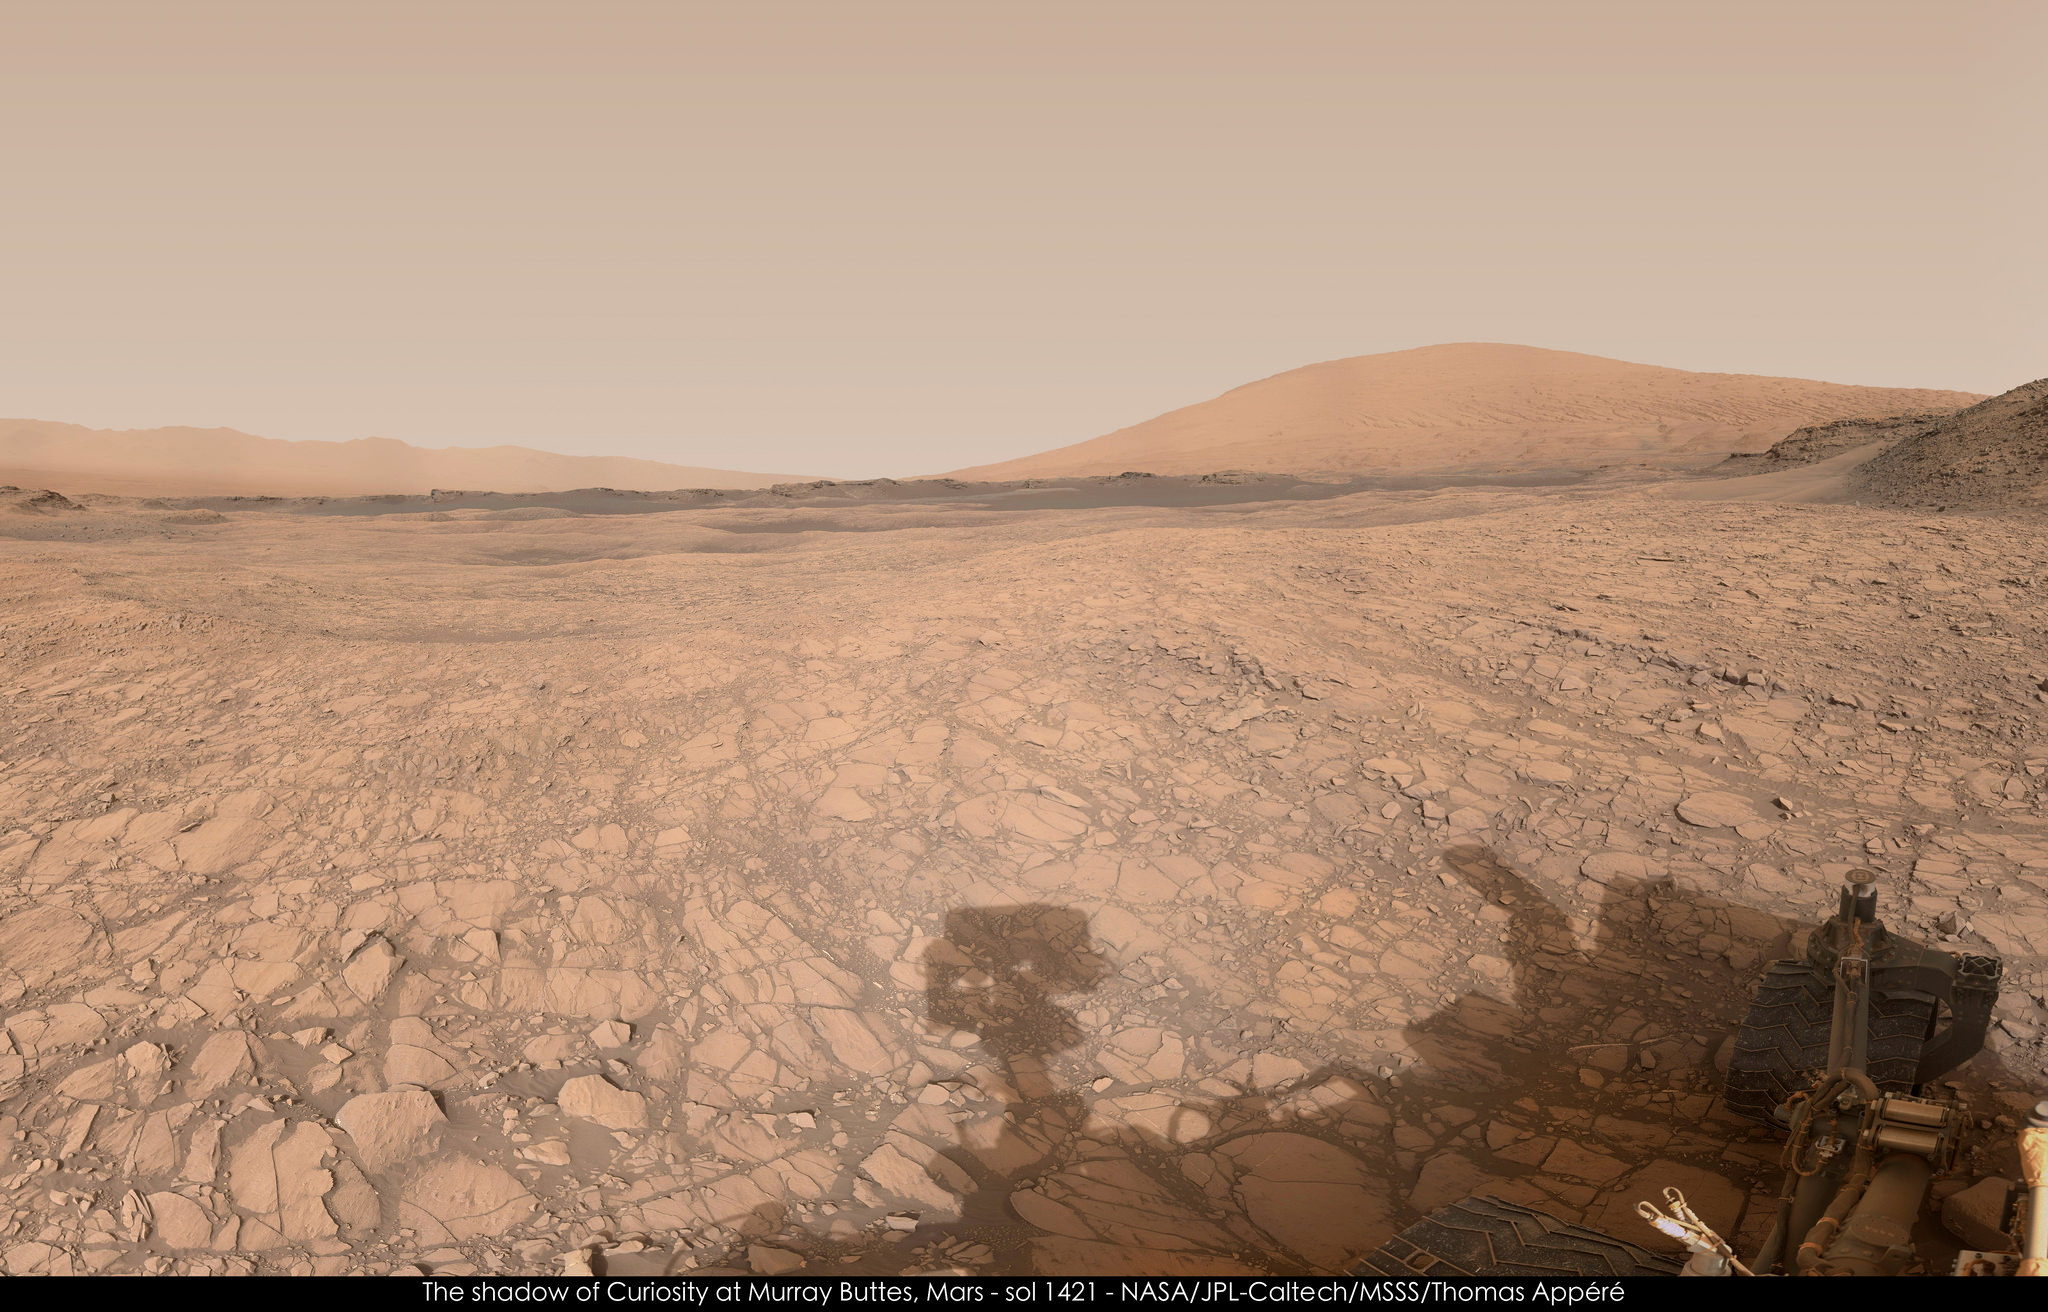 À droite, le mont Sharp. Curiosity, dont on peut voir l’ombre projetée au sol, était à Murray Buttes ce jour-là (Sol 1.421). © Nasa, JPL-Caltech, MSSS, Thomas Appéré